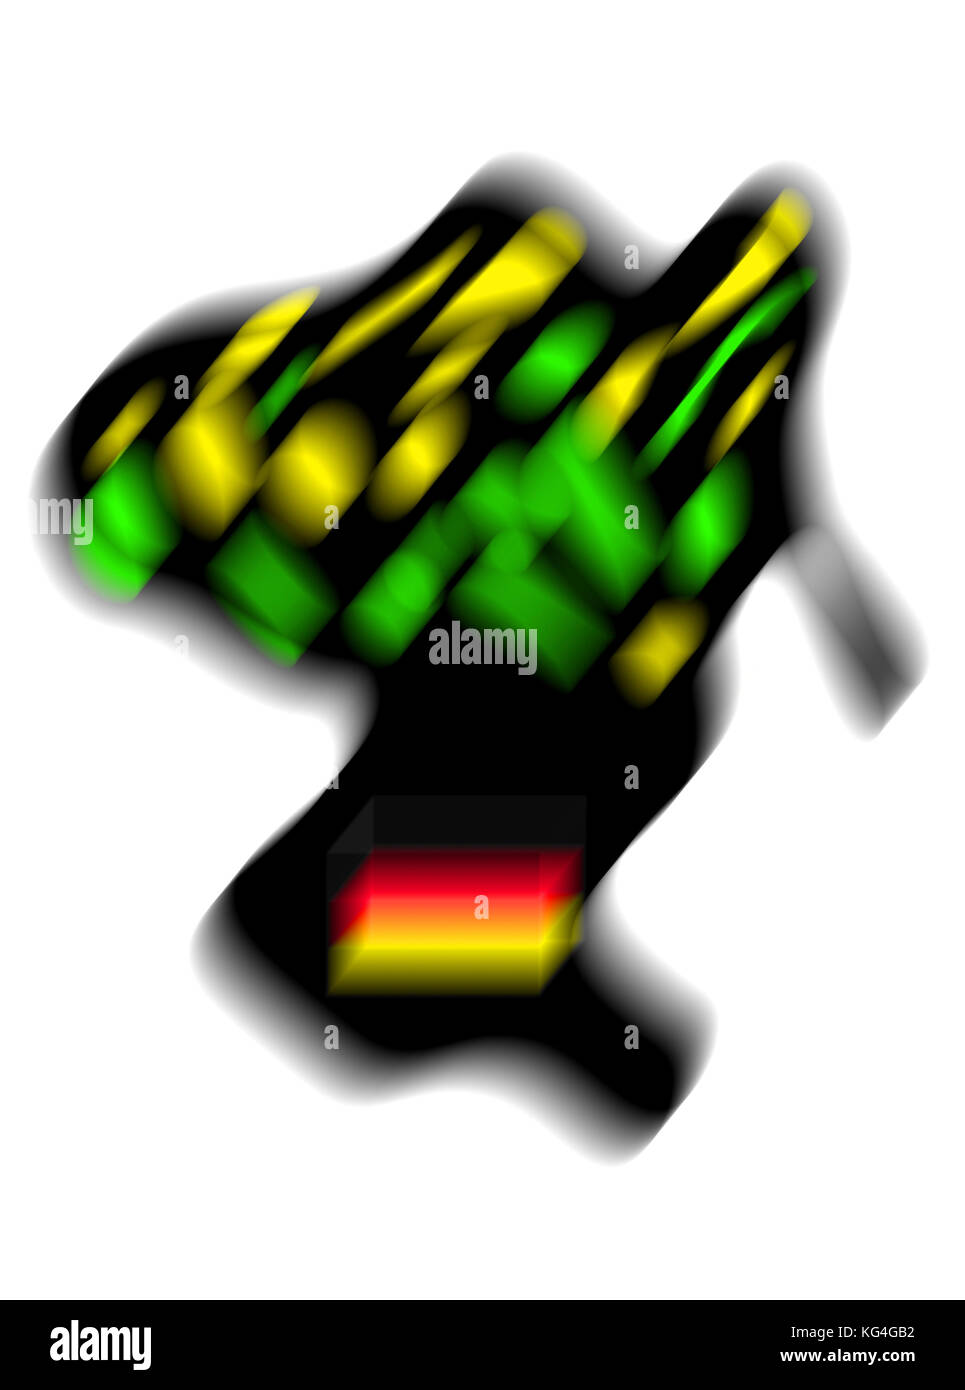 Jamaika, Coalition, Giamaica, Koalition, Schwarz Gelb Grün Gespenst mit Bundesflagge, Schwampel,Europa,Germania,Deutschland Foto Stock